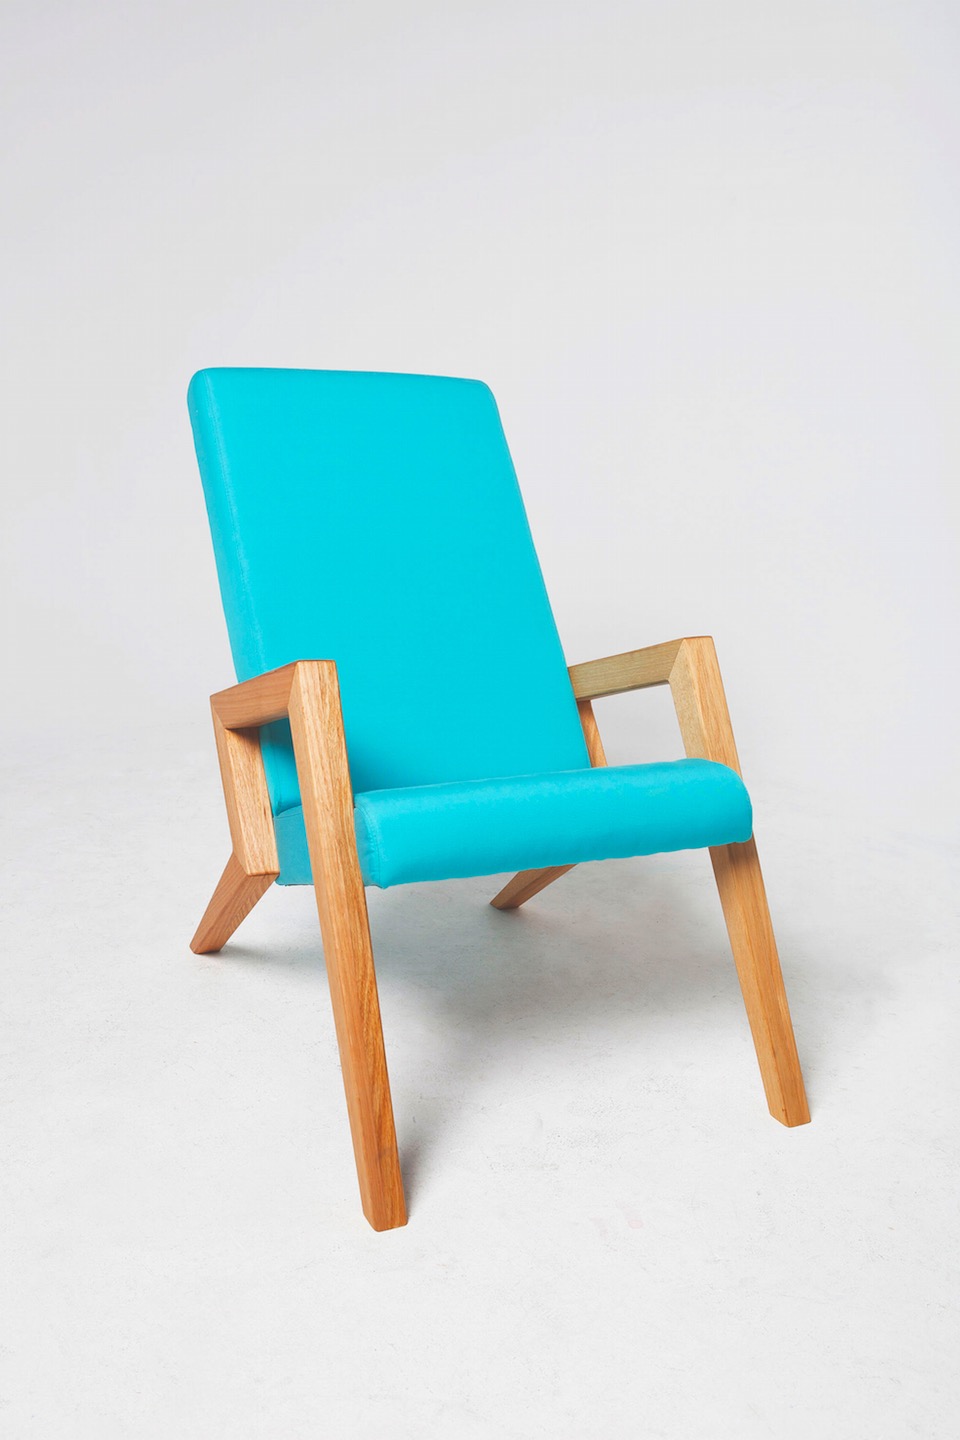 Aerial Chair by Megan Devenish-Krauth, industrial designer at Megmeg.